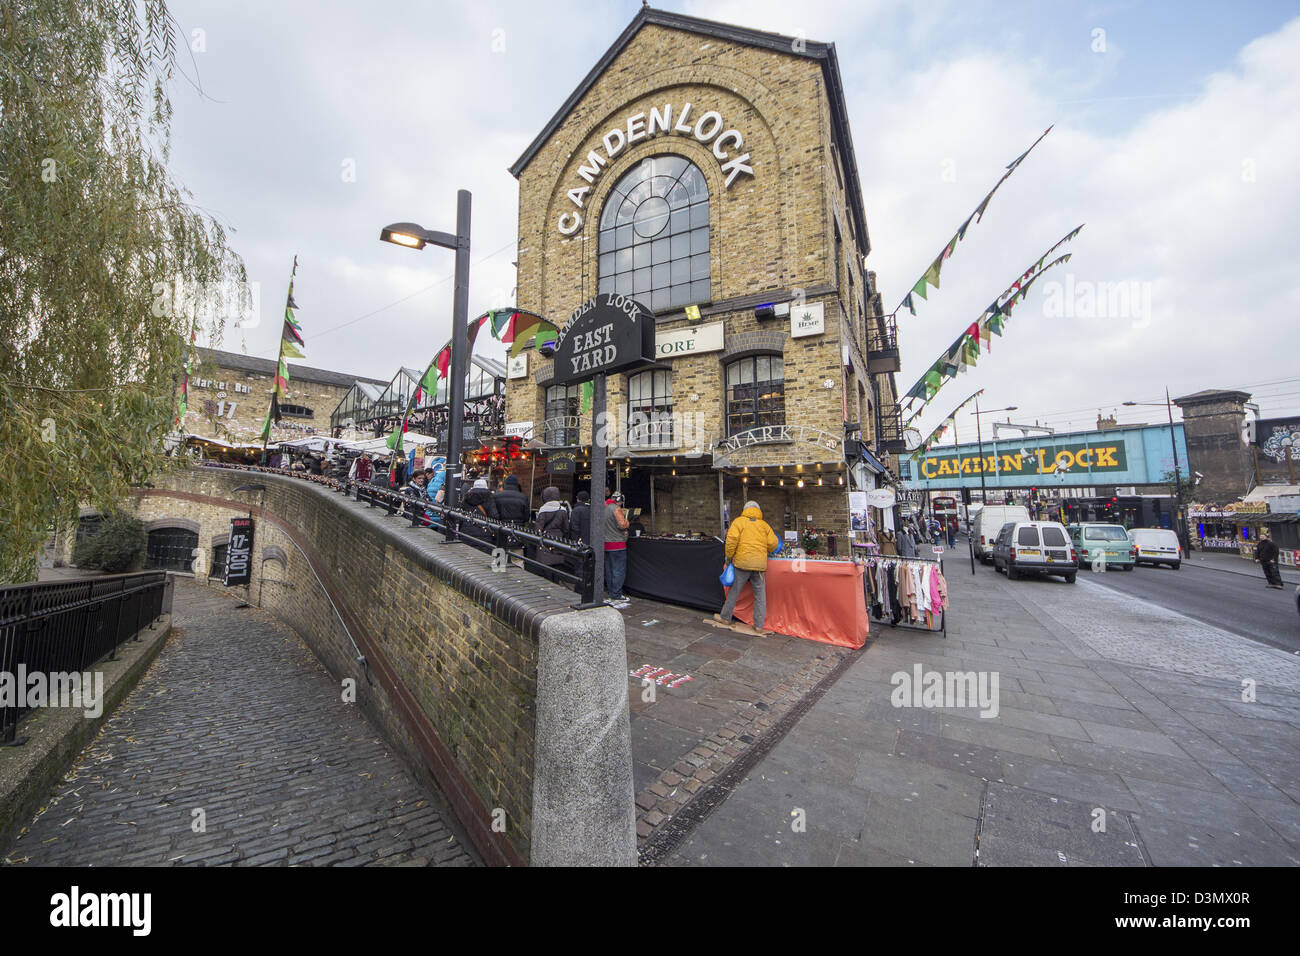 London, Camden Lock, Camden Market, Camden Town, Stock Photo